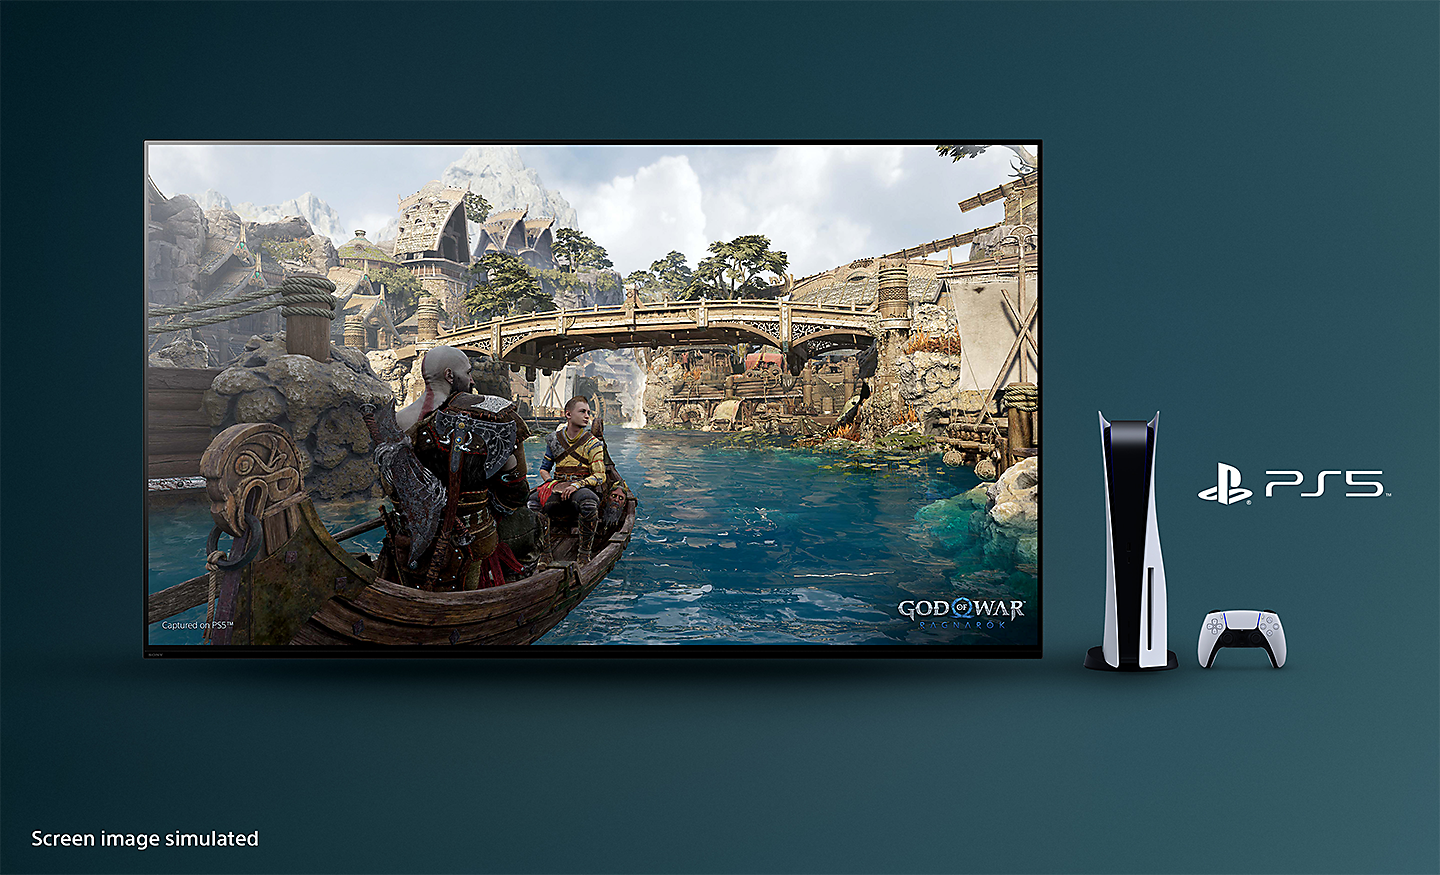 BRAVIA TV dengan screenshot God of War: Ragnarok yang memperlihatkan perahu di sungai dan jembatan di latar belakang dengan konsol PS5™, kontroler, dan logo PS5™ di sisi kanan TV